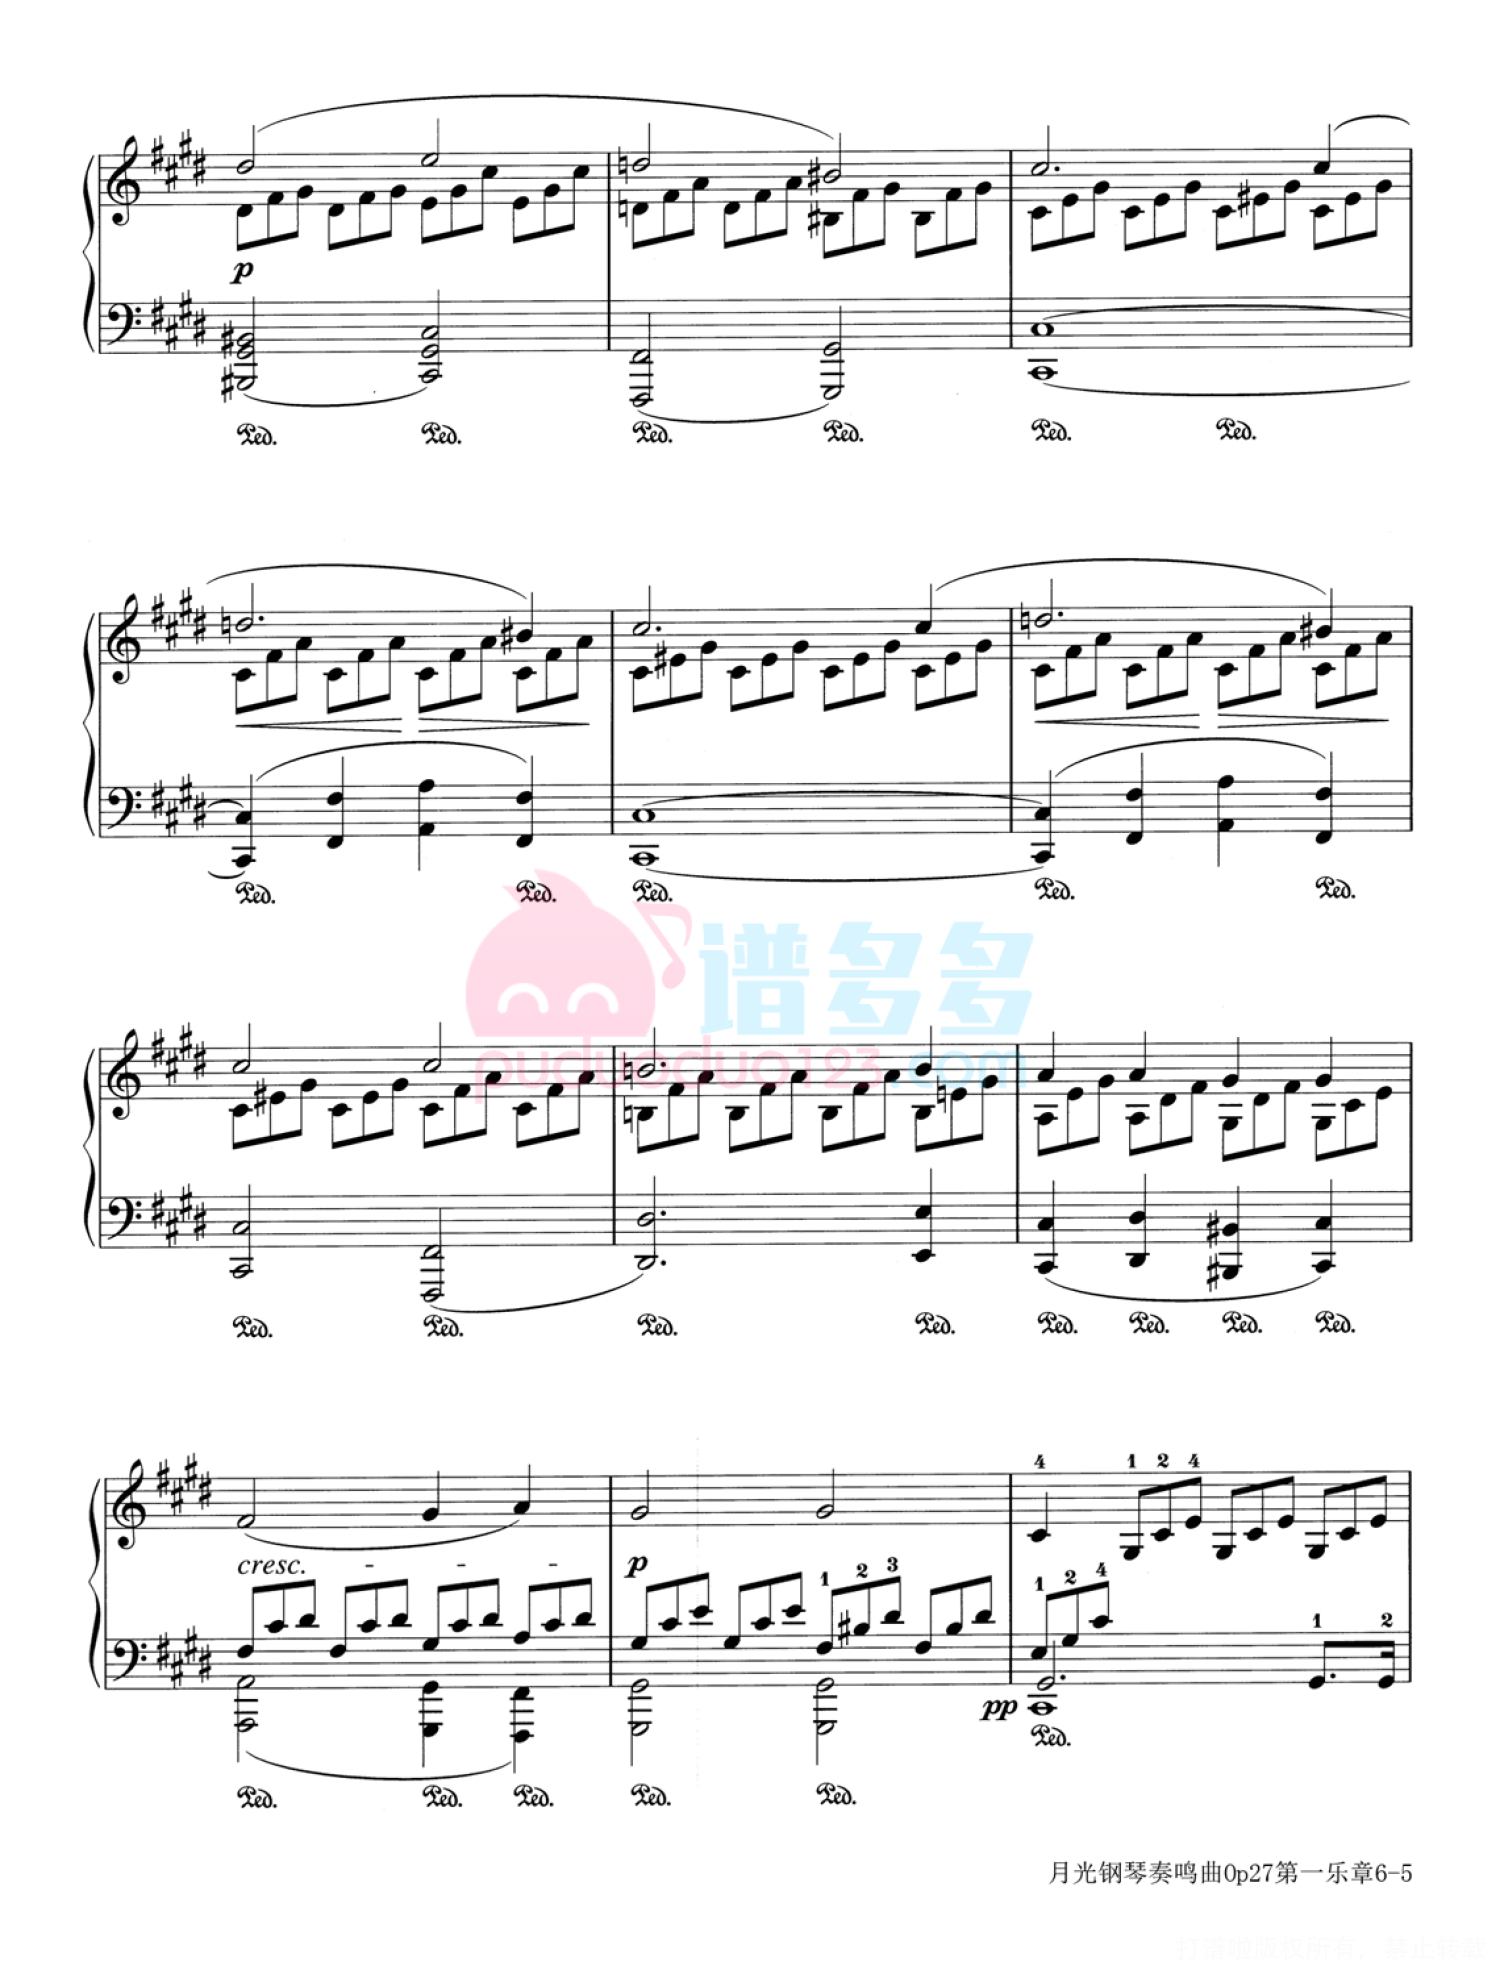 贝多芬《月光》奏鸣曲钢琴谱OP.27 No.2第5张